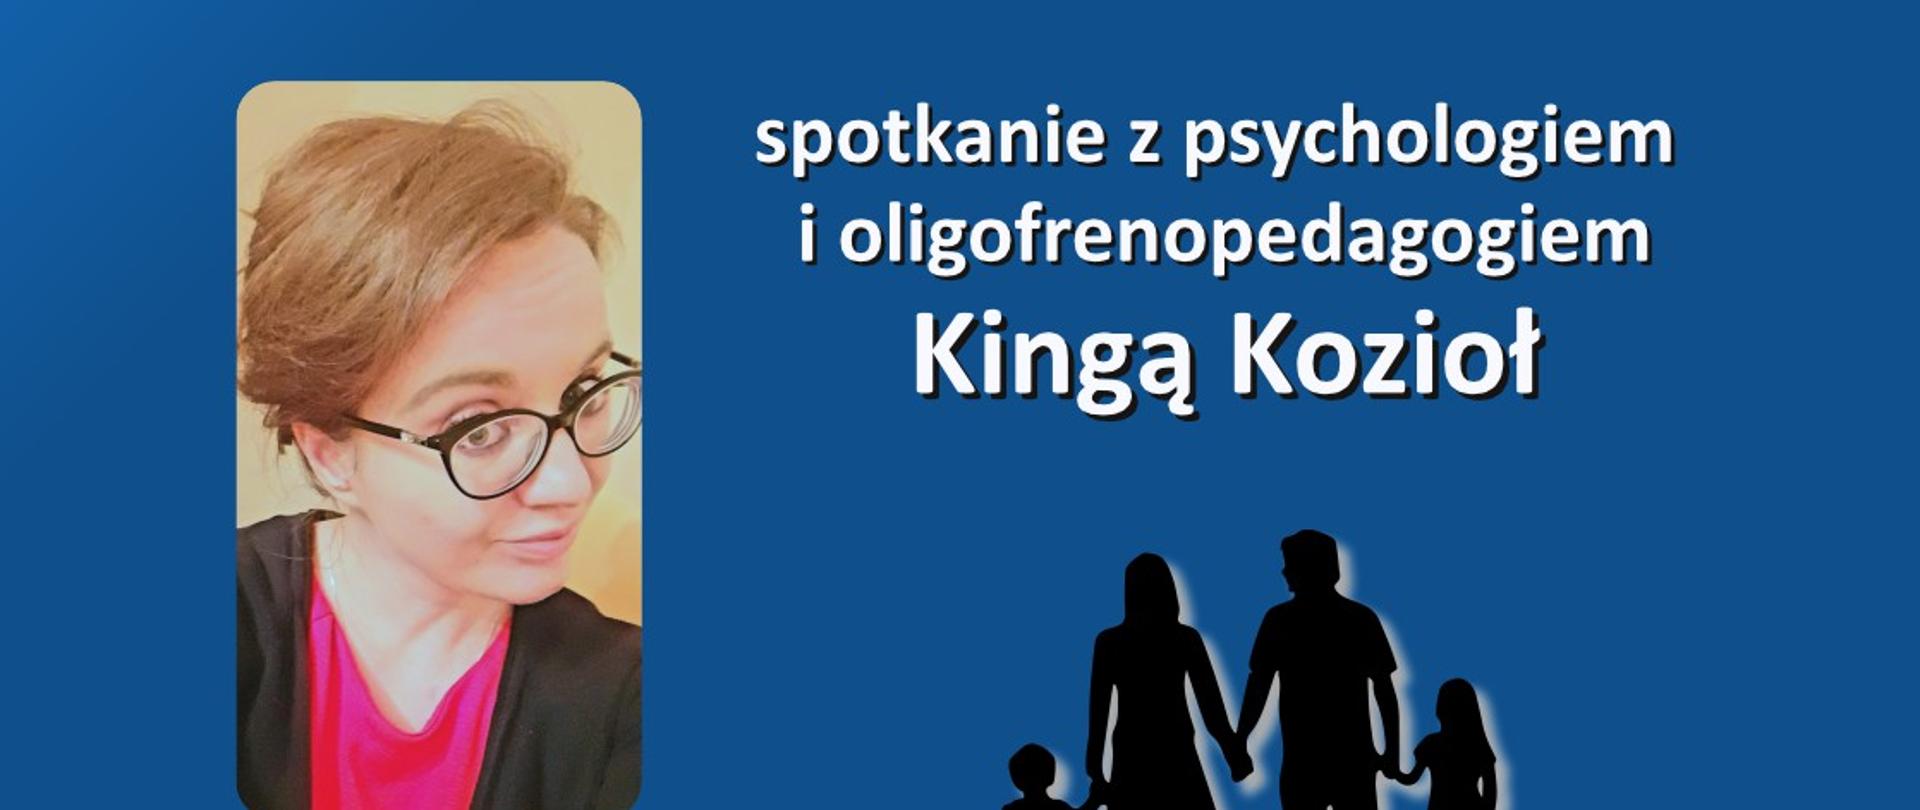 plakat na granatowym tle informujący o spotkaniu z psycholog Kingą Kozioł